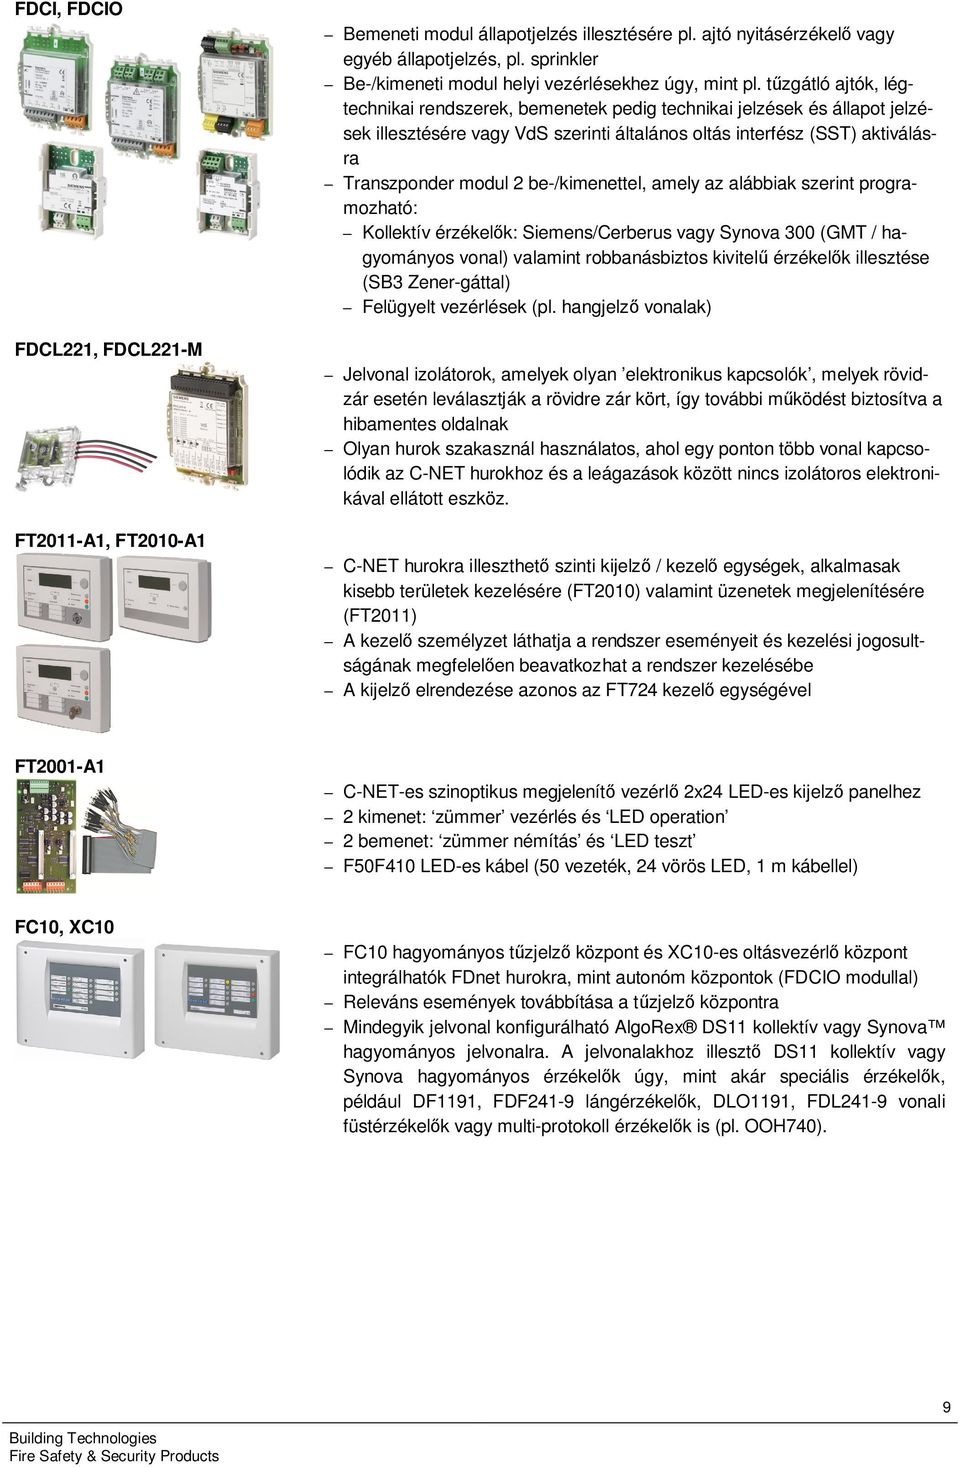 tűzgátló ajtók, légtechnikai rendszerek, bemenetek pedig technikai jelzések és állapot jelzések illesztésére vagy VdS szerinti általános oltás interfész (SST) aktiválásra Transzponder modul 2